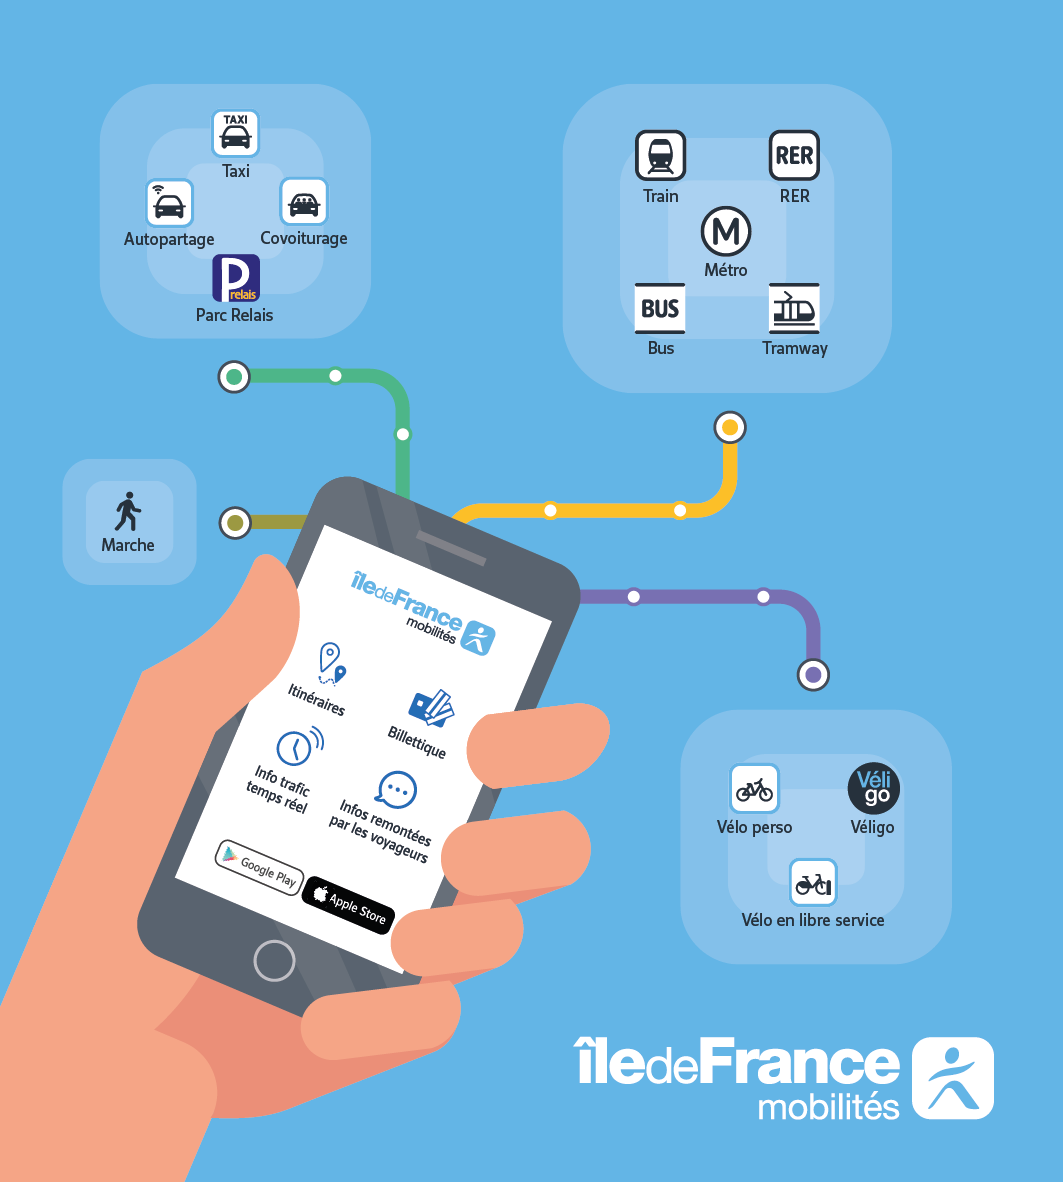 Les services Île-de-France Mobilités, disponibles sur le web mais aussi sur application mobile, vous permettent d'organiser vos déplacements, d'acheter vos billets et d'avoir accès en temps réel aux infos trafic.